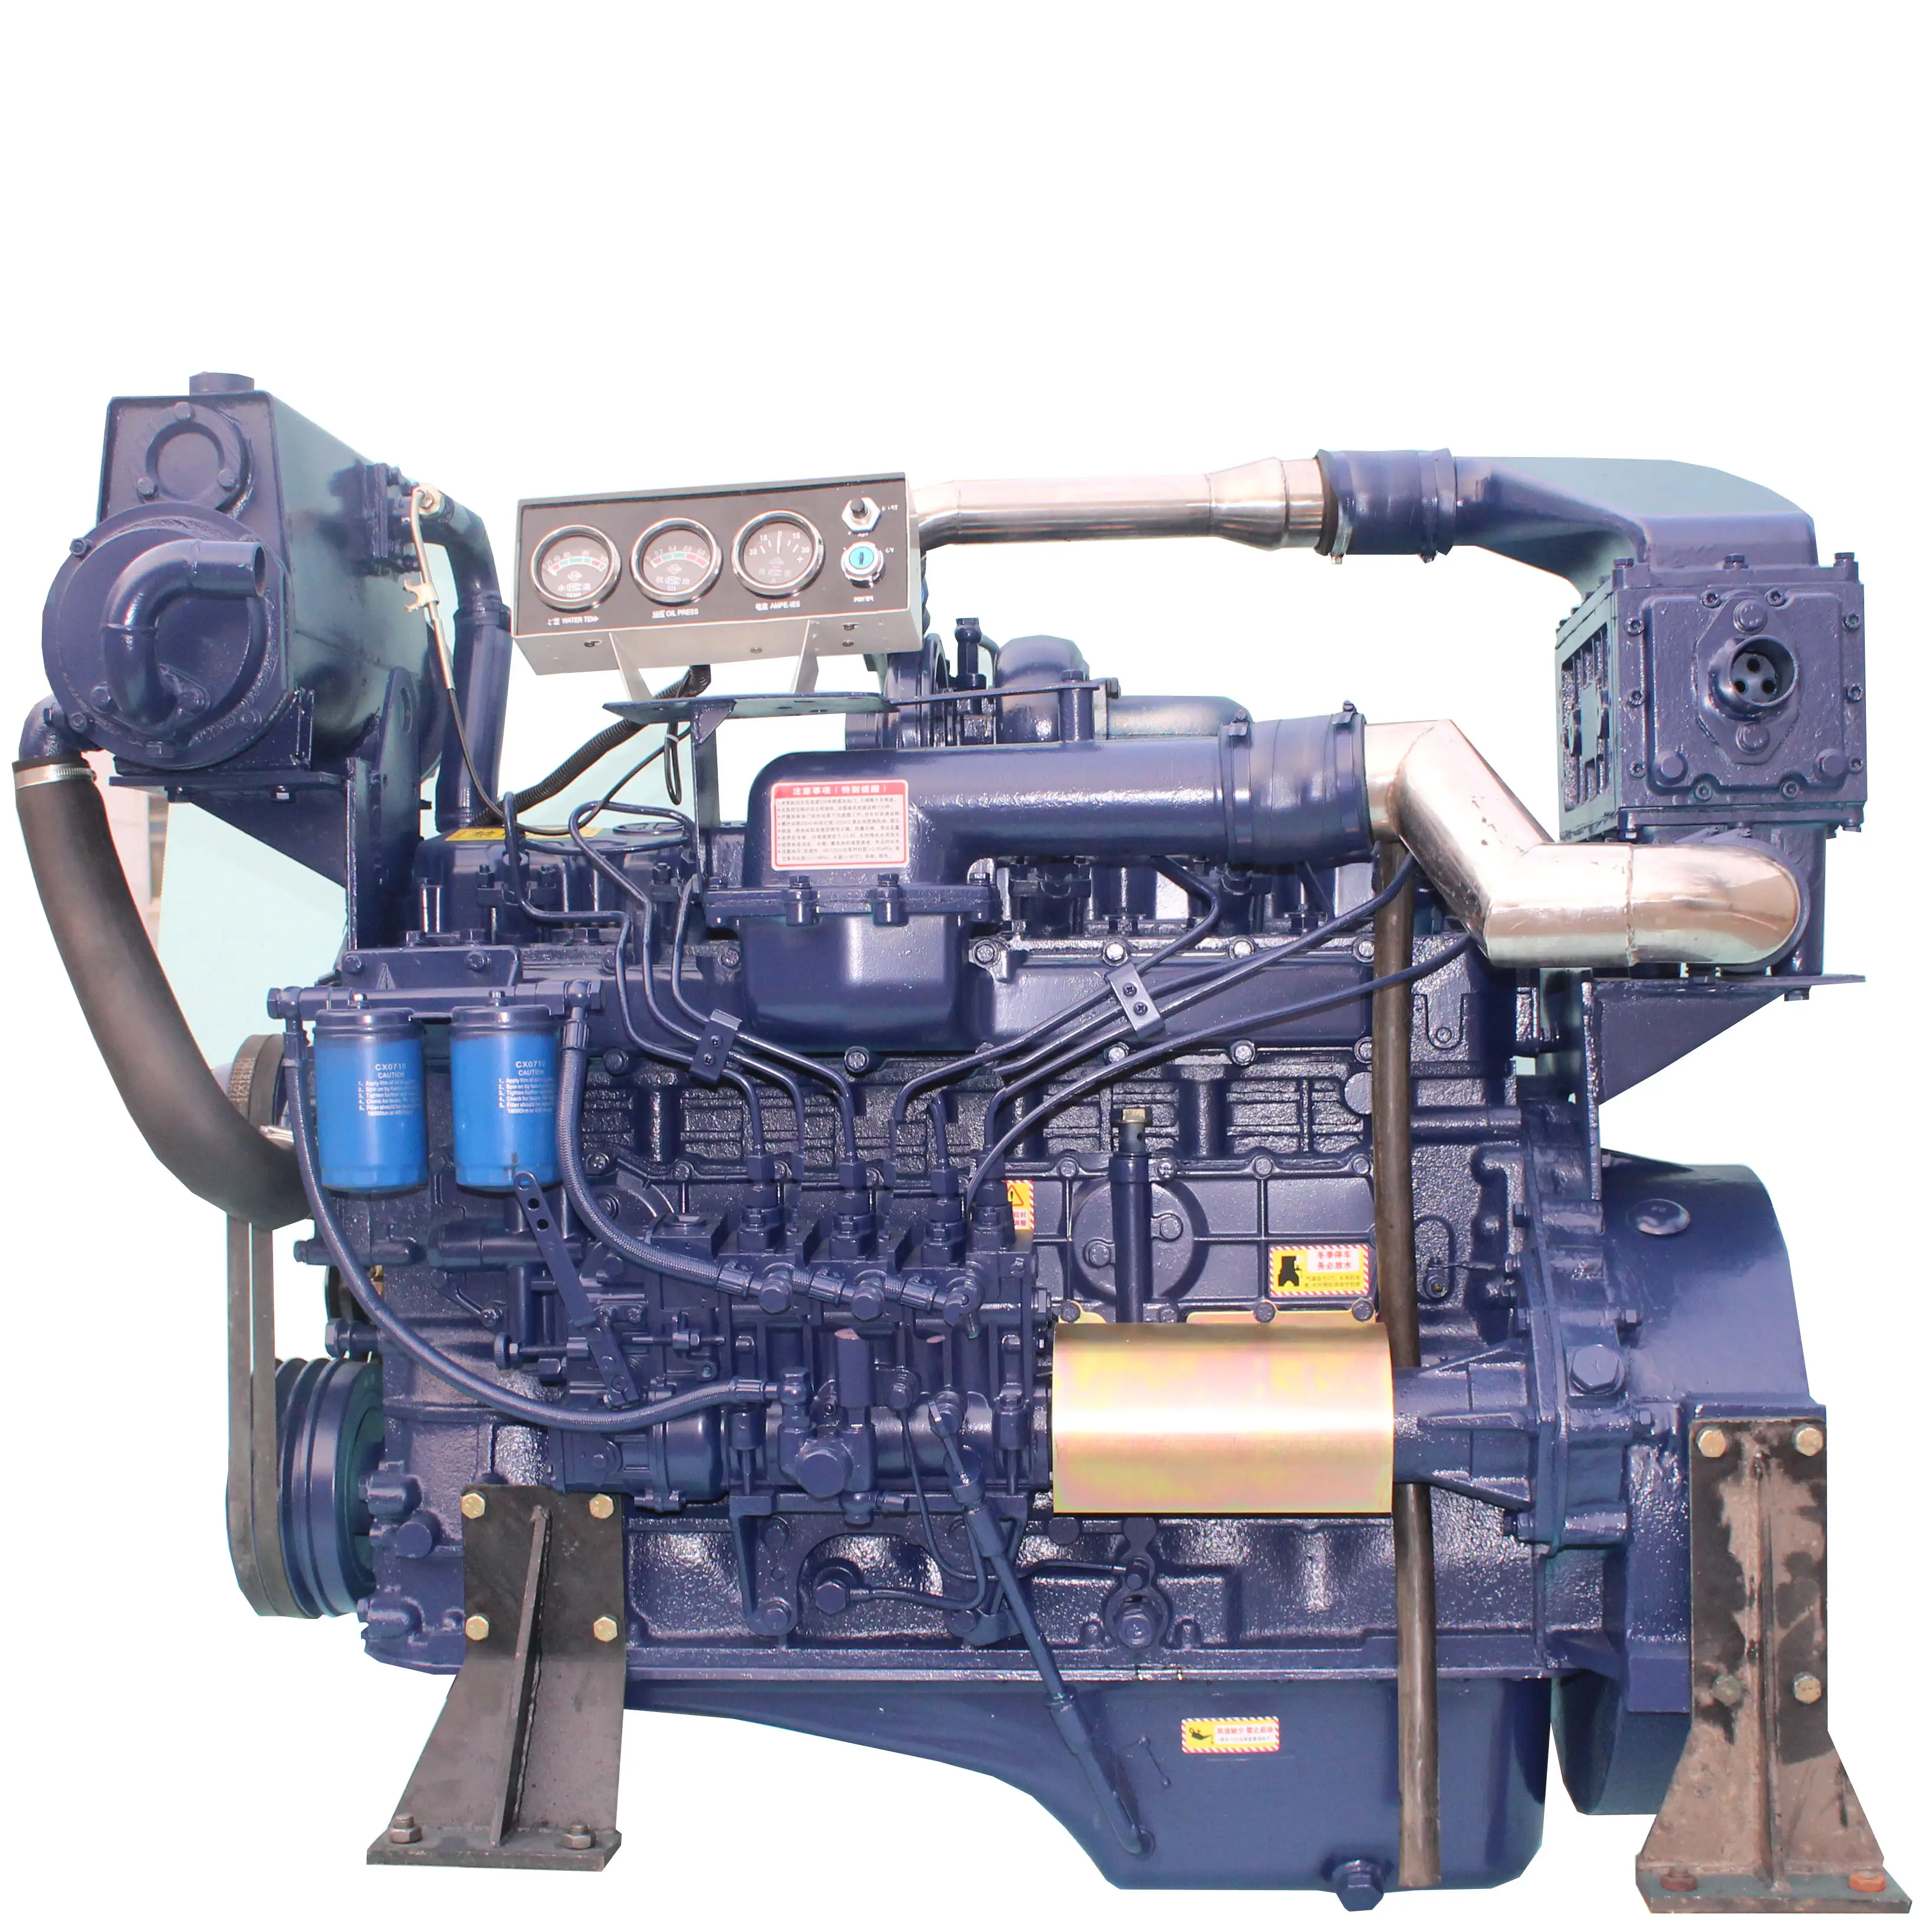 164hp/121KW многоцилиндровые дизельные двигатели petter для продажи